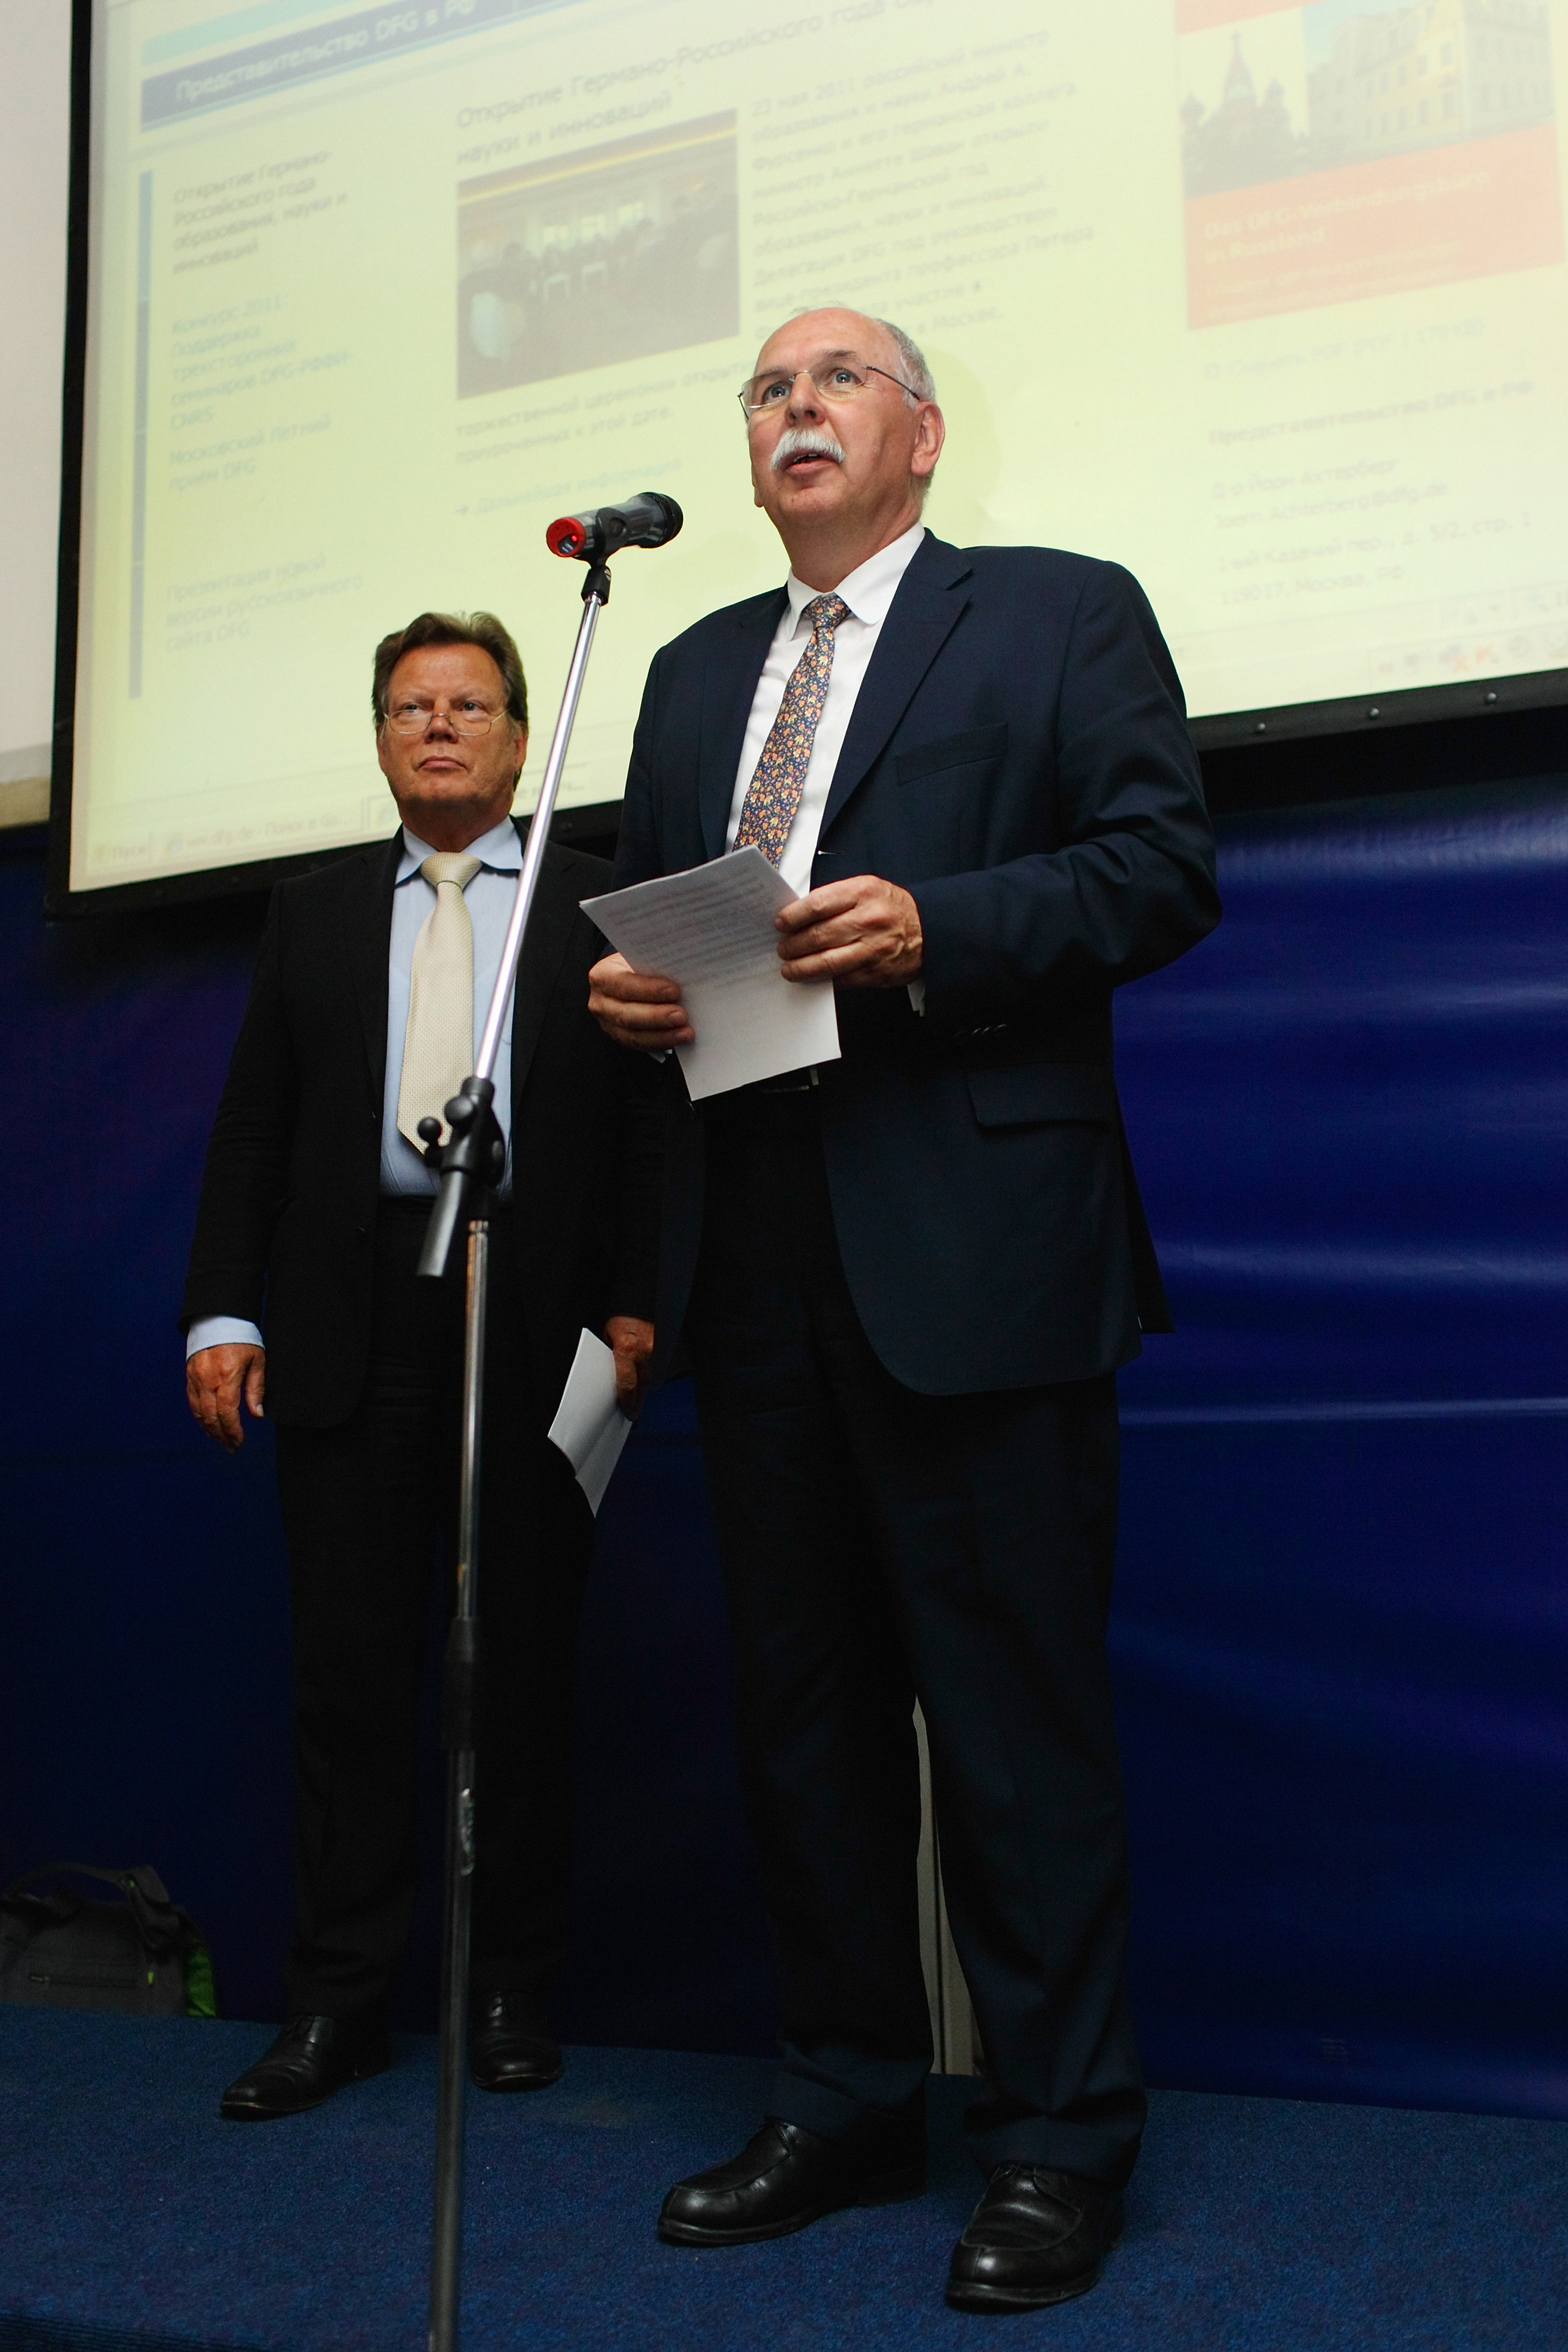 DFG-Präsident Prof. Dr. Matthias Kleiner und Ständiger Vertreter des Botschafters Dr. Rudolf Adam bei der Eröffnung des Sommerempfangs in Moskau 2011